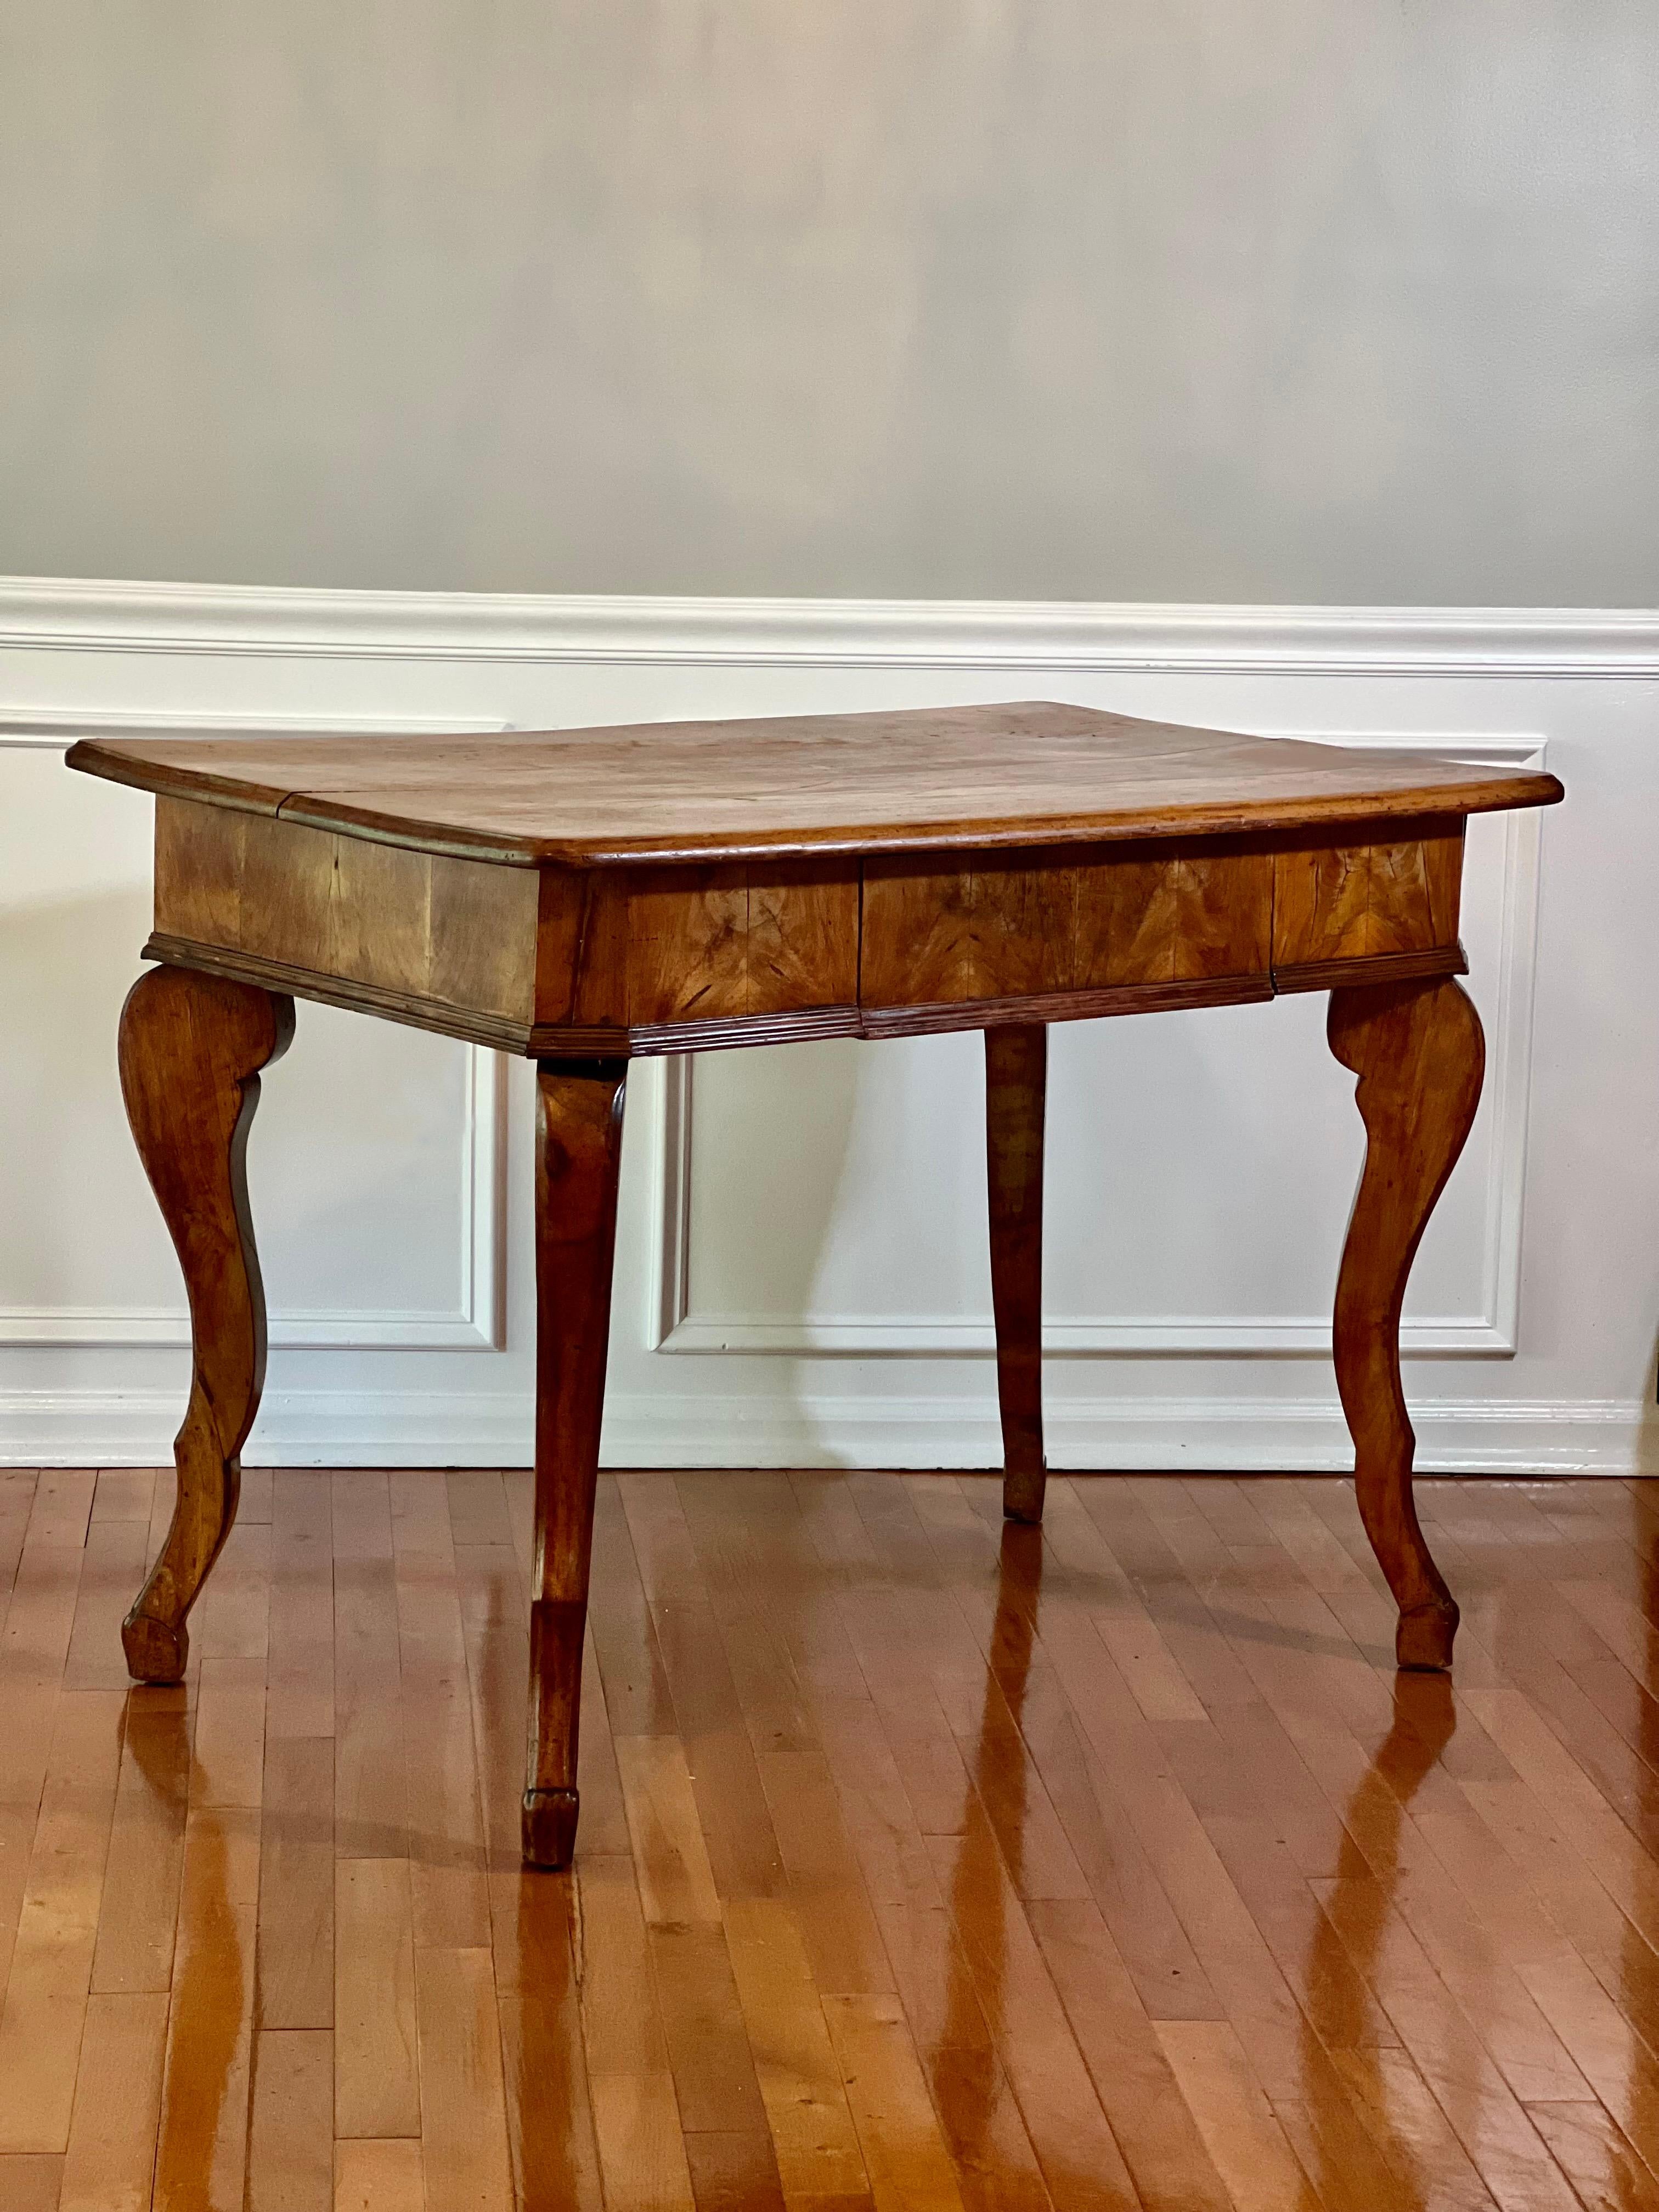 Antiker französischer Bauernhoftisch aus Nussbaumholz, Frankreich, um 1850.

Dieser schöne Tisch verkörpert rustikale Eleganz. Gefertigt aus wurmstichigem Nussbaum, einem hochwertigen Holz, das die Franzosen für Arbeitstische und bäuerliche